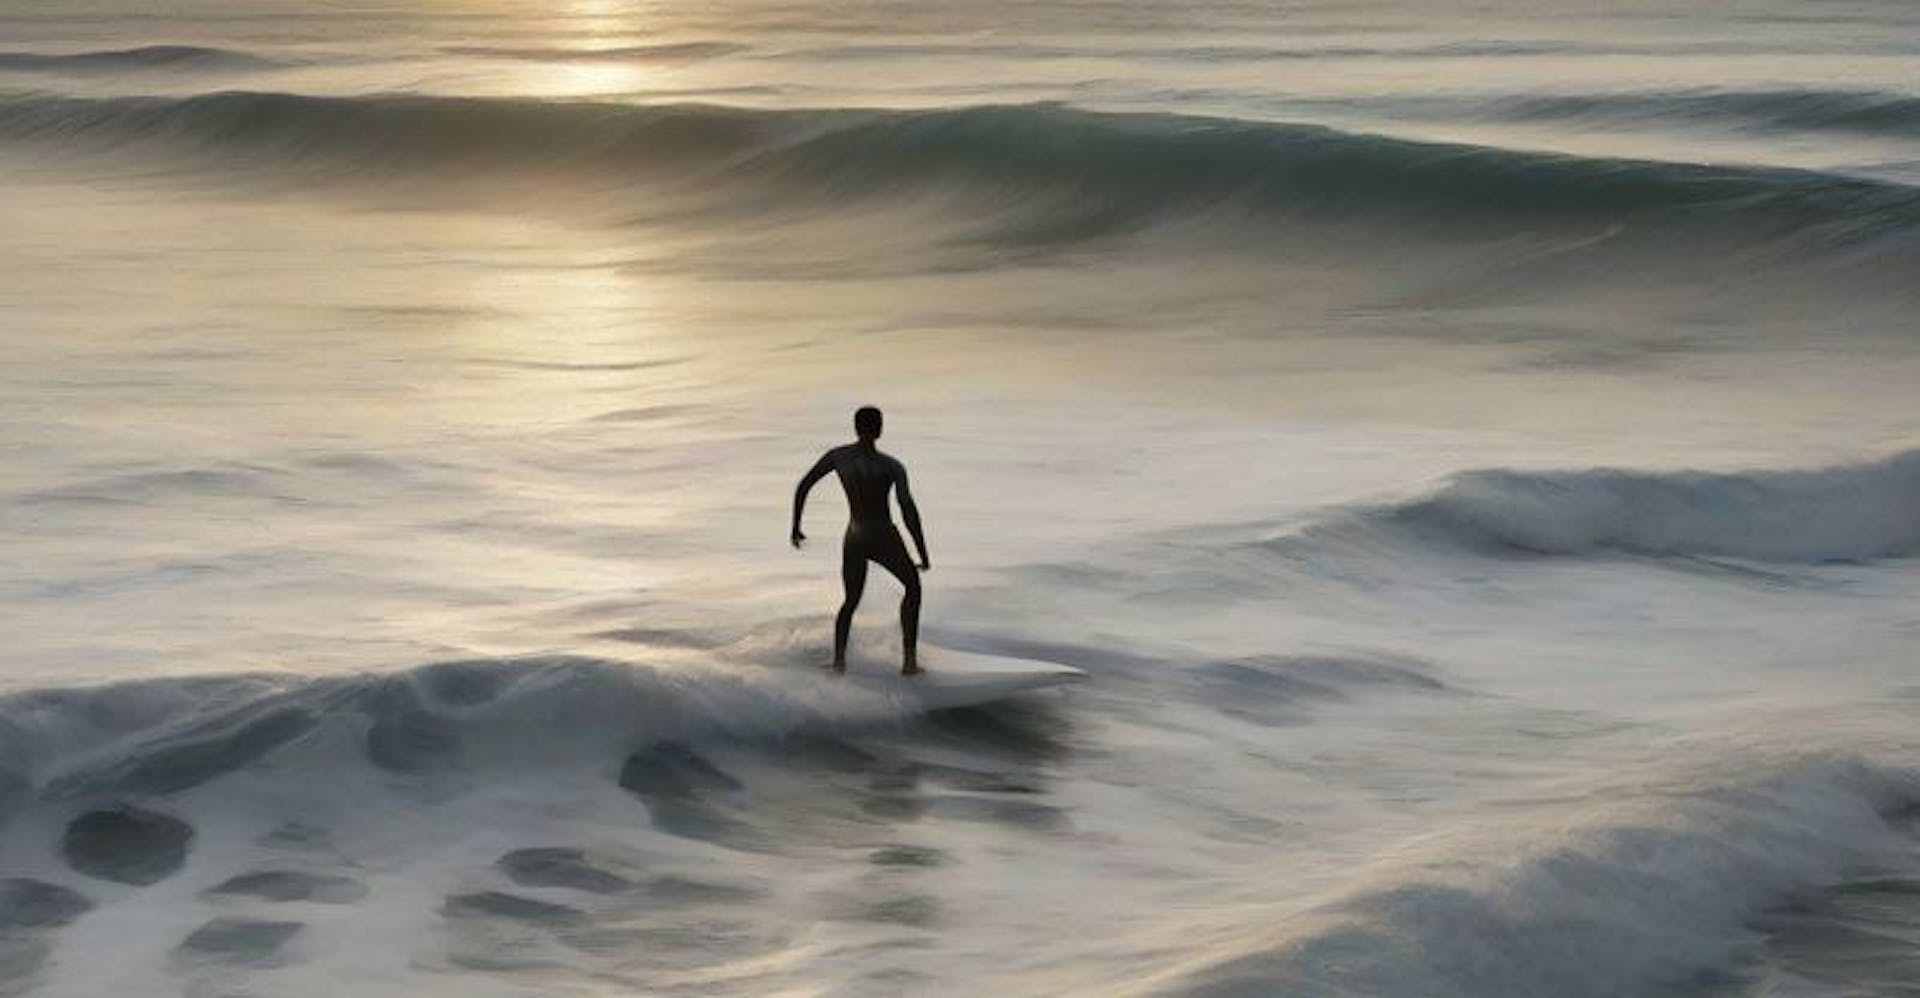 Le surfeur solitaire surfe sur la vague sur le vaste océan de pages Web statiques